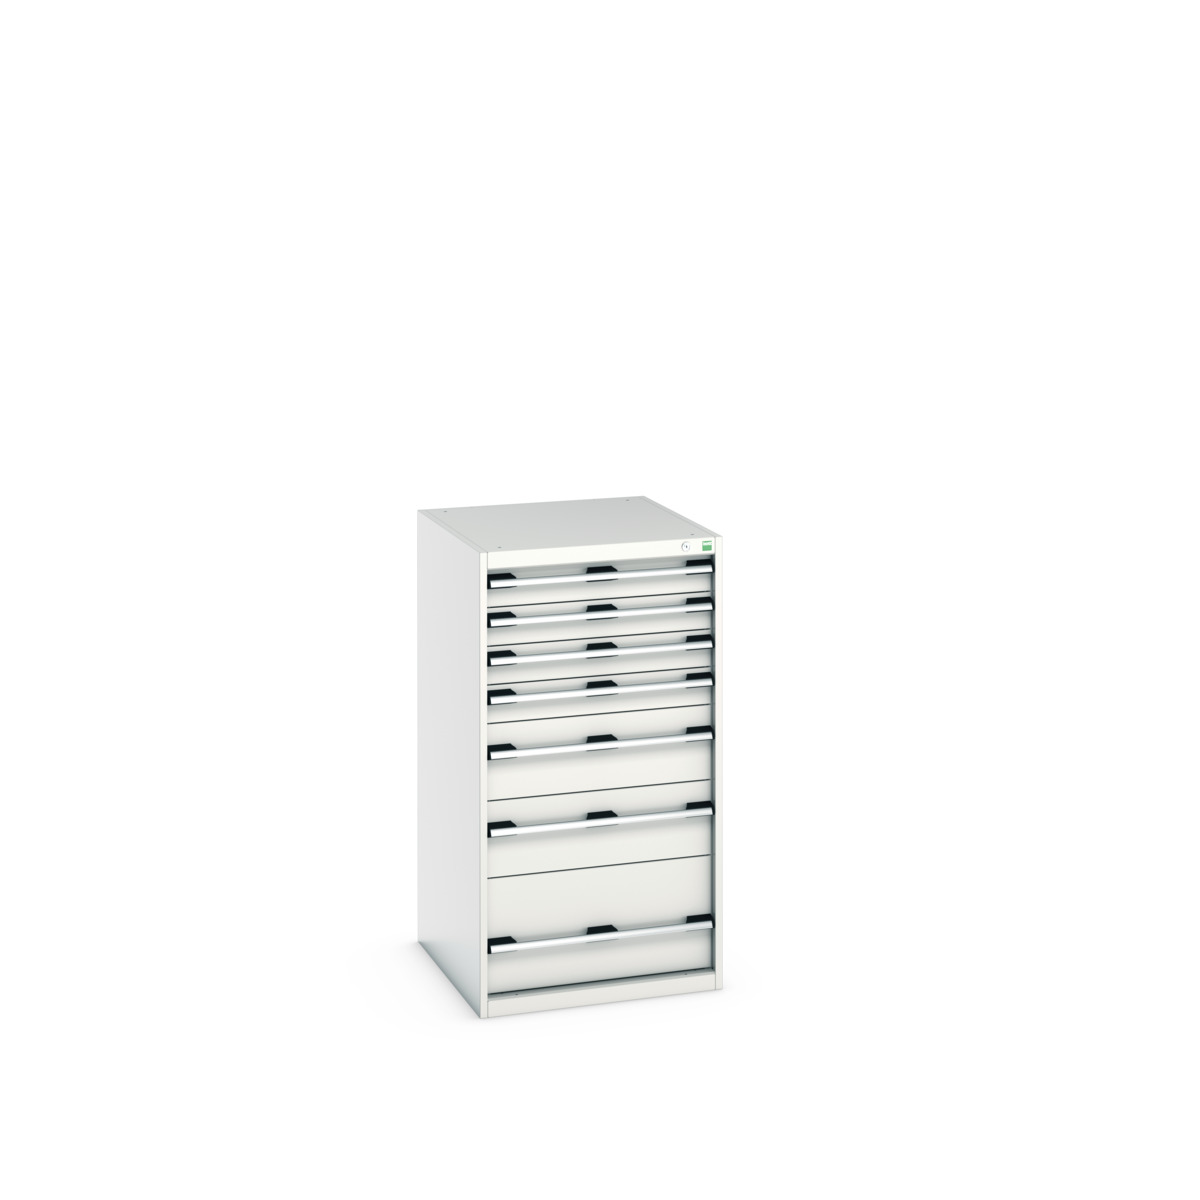 40027037.16V - cubio drawer cabinet